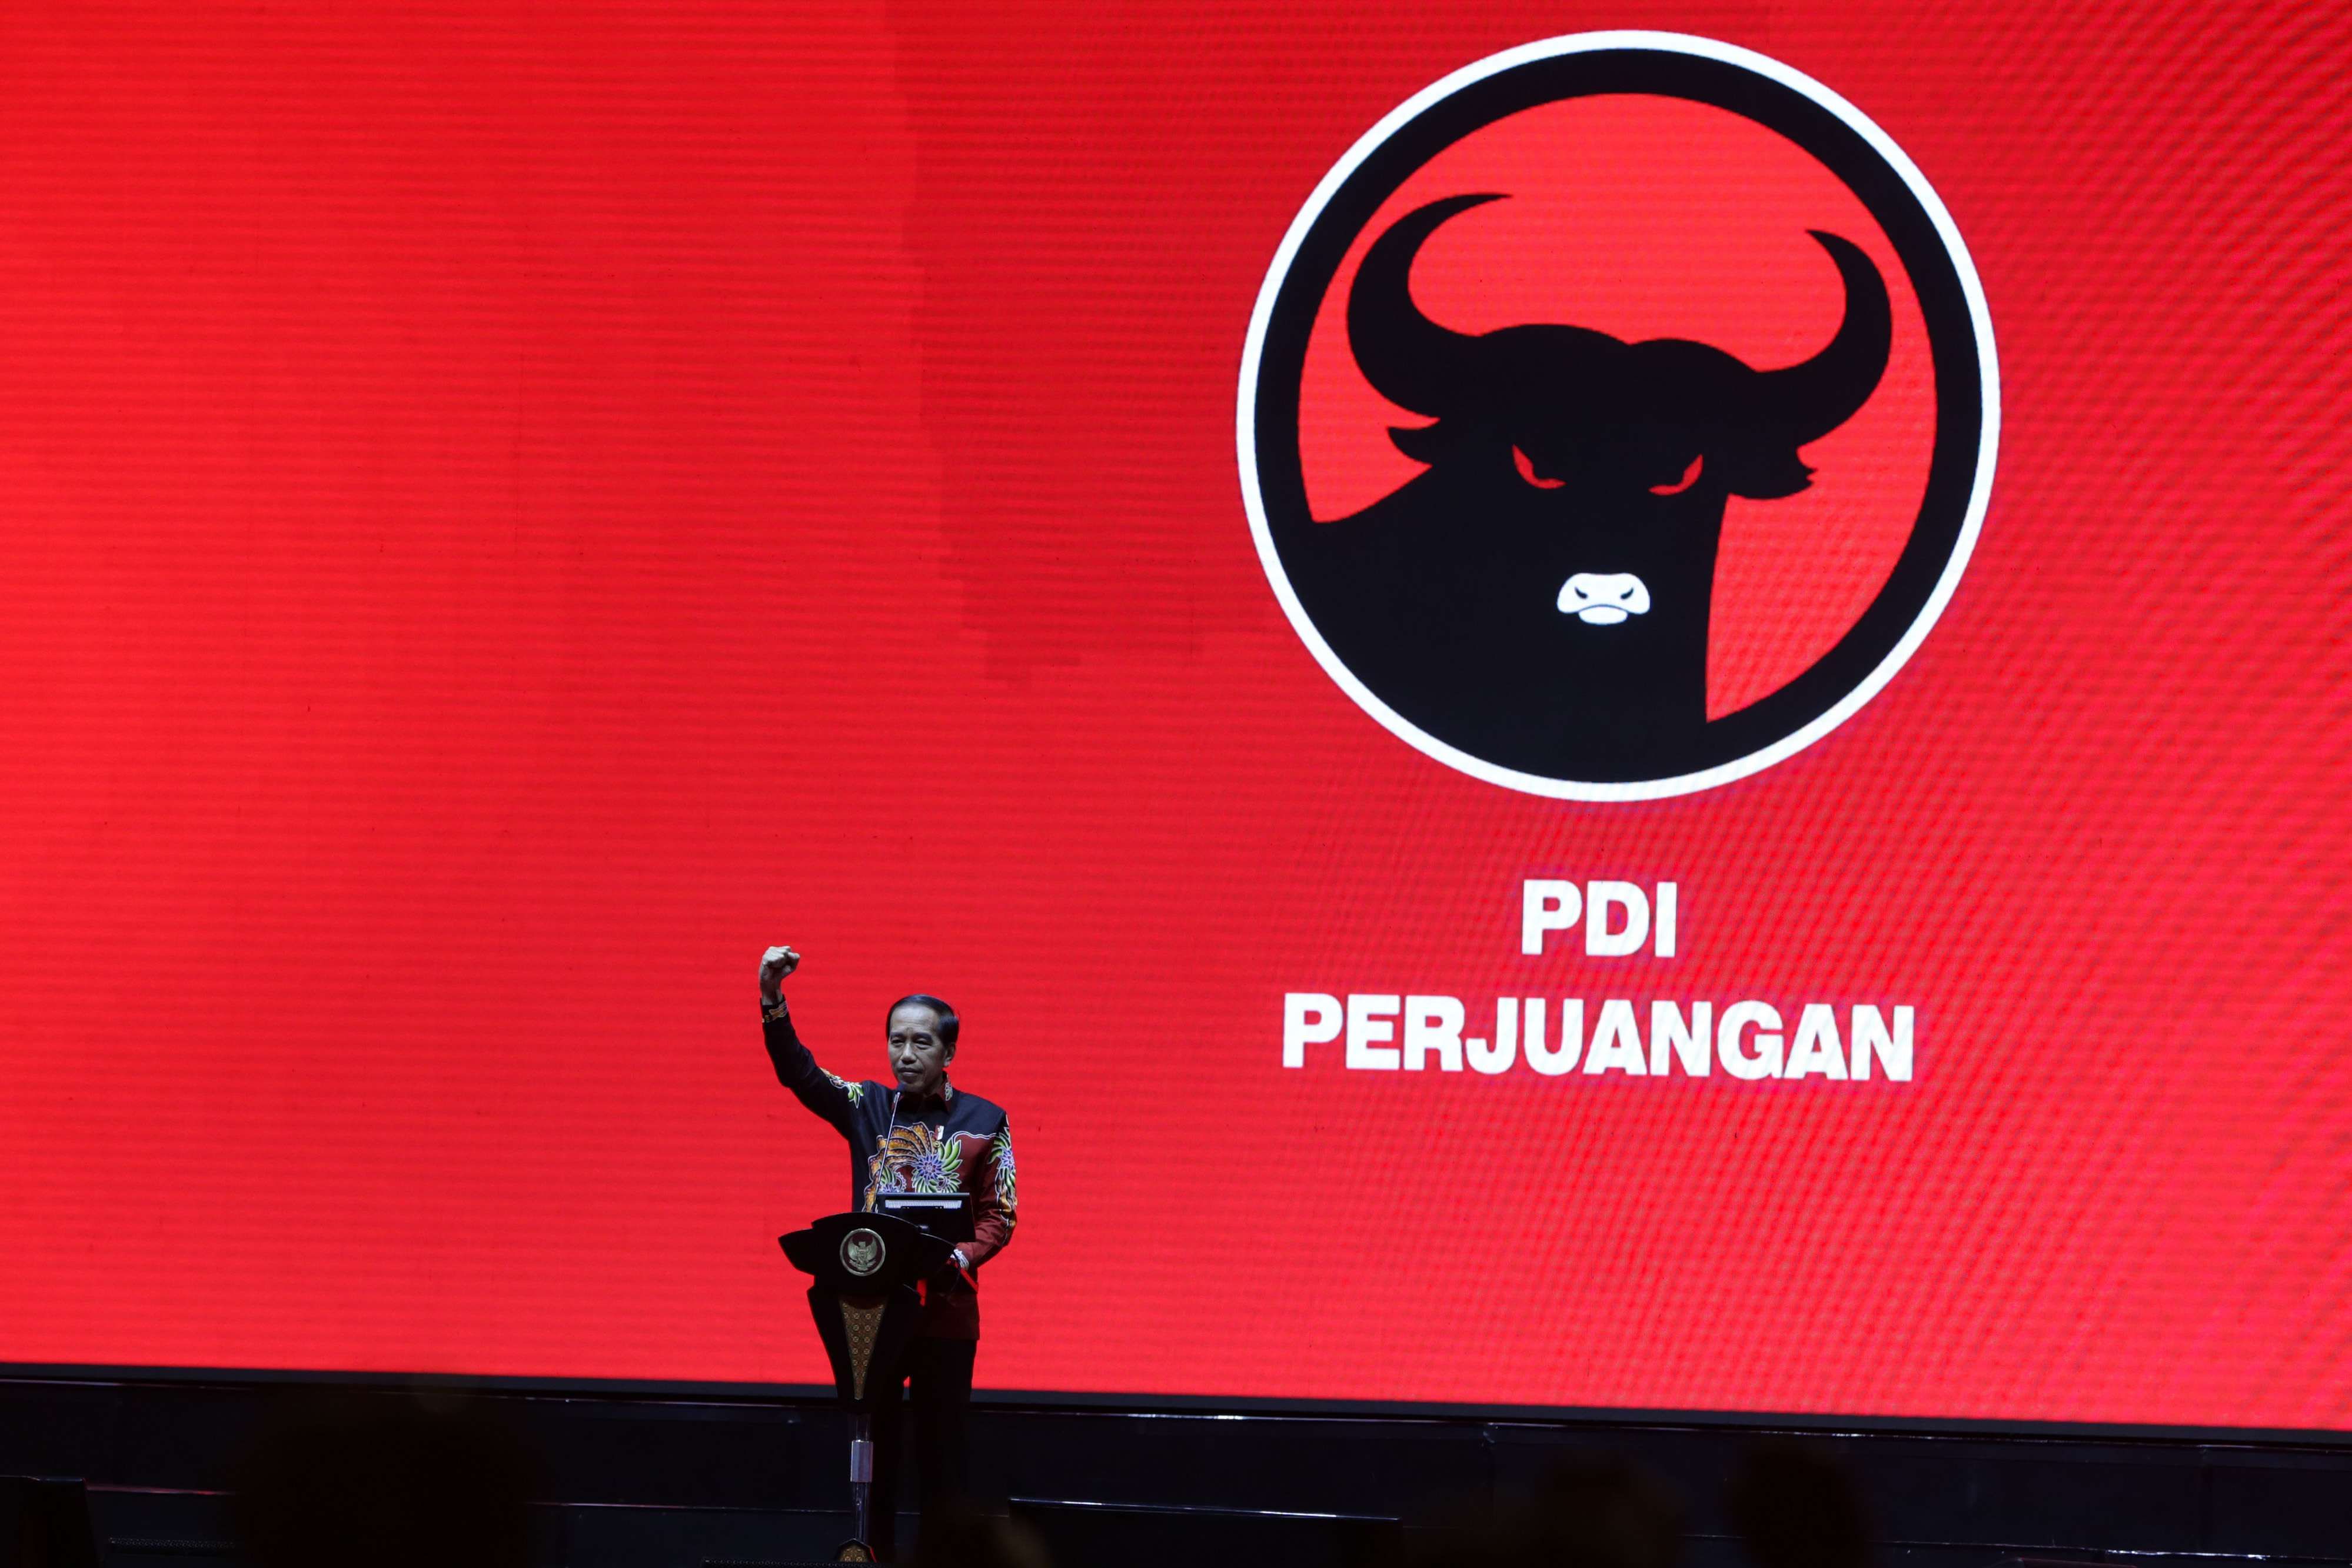 [HOAKS] Jokowi Ambil Alih PDI-P, Singkirkan Megawati